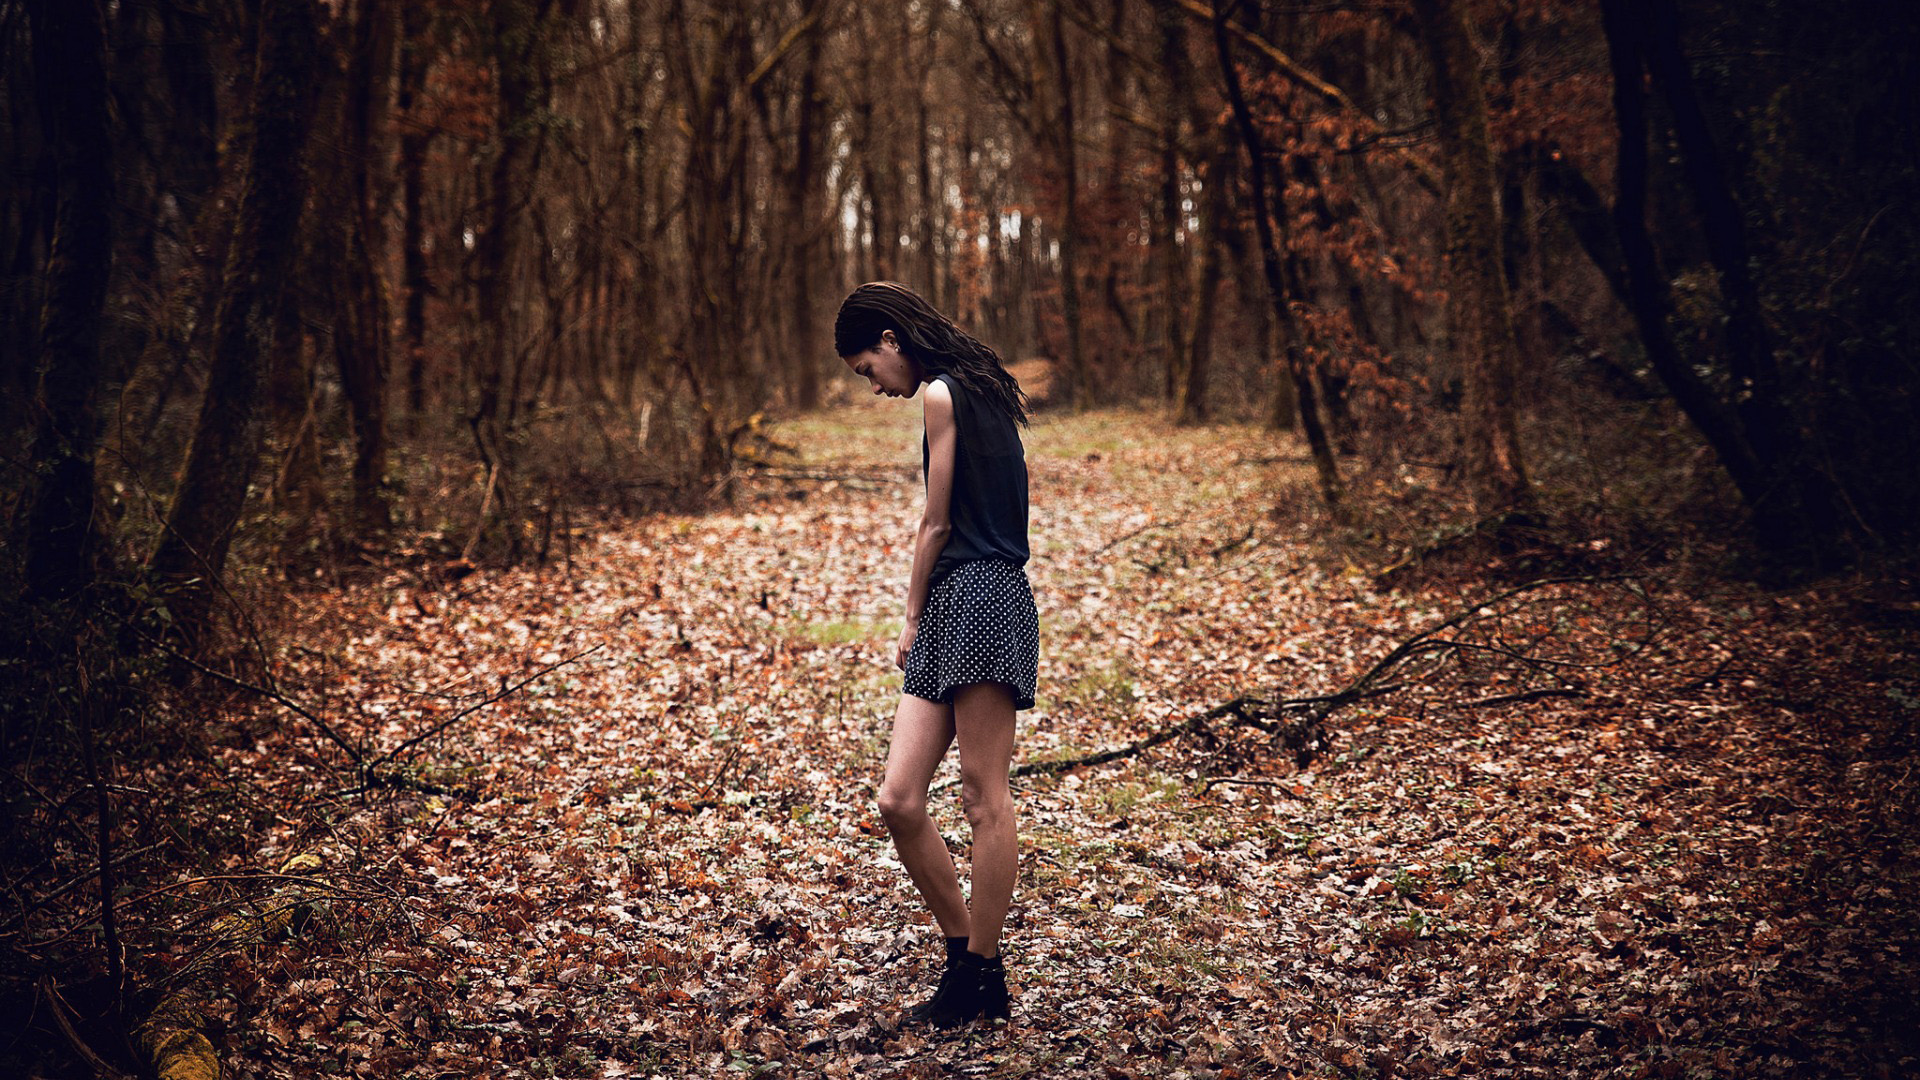 女孩,森林,秋天,悲伤的照片,孤单,非主流壁纸